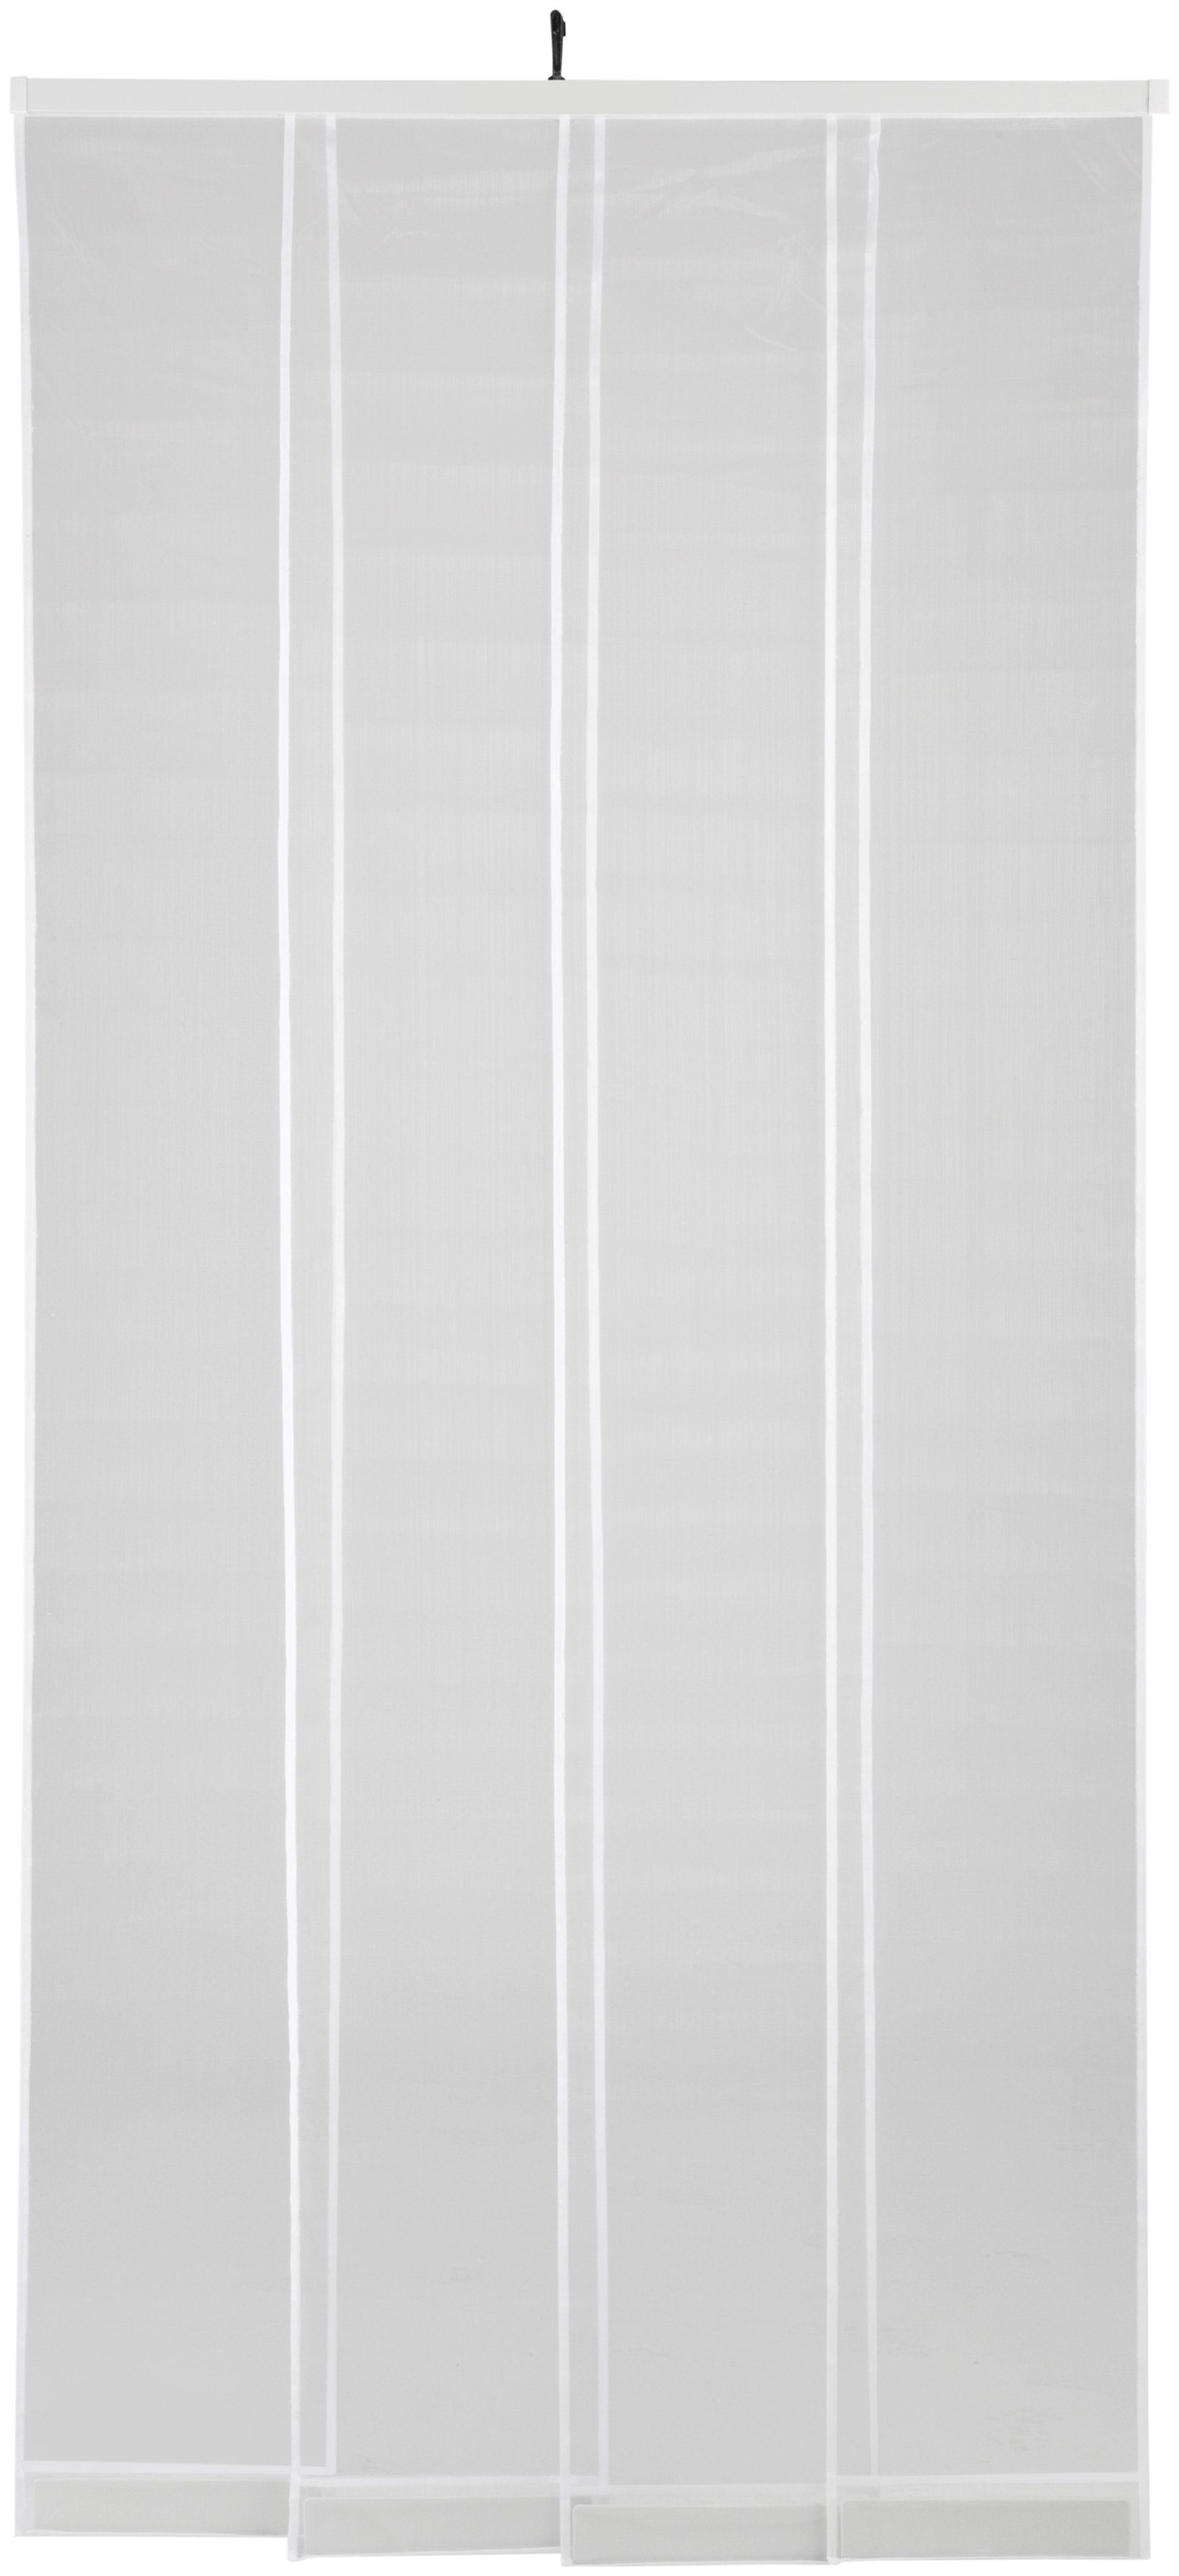 hecht international Insektenschutz-Vorhang COMFORT, weiß, BxH: 100x220 cm